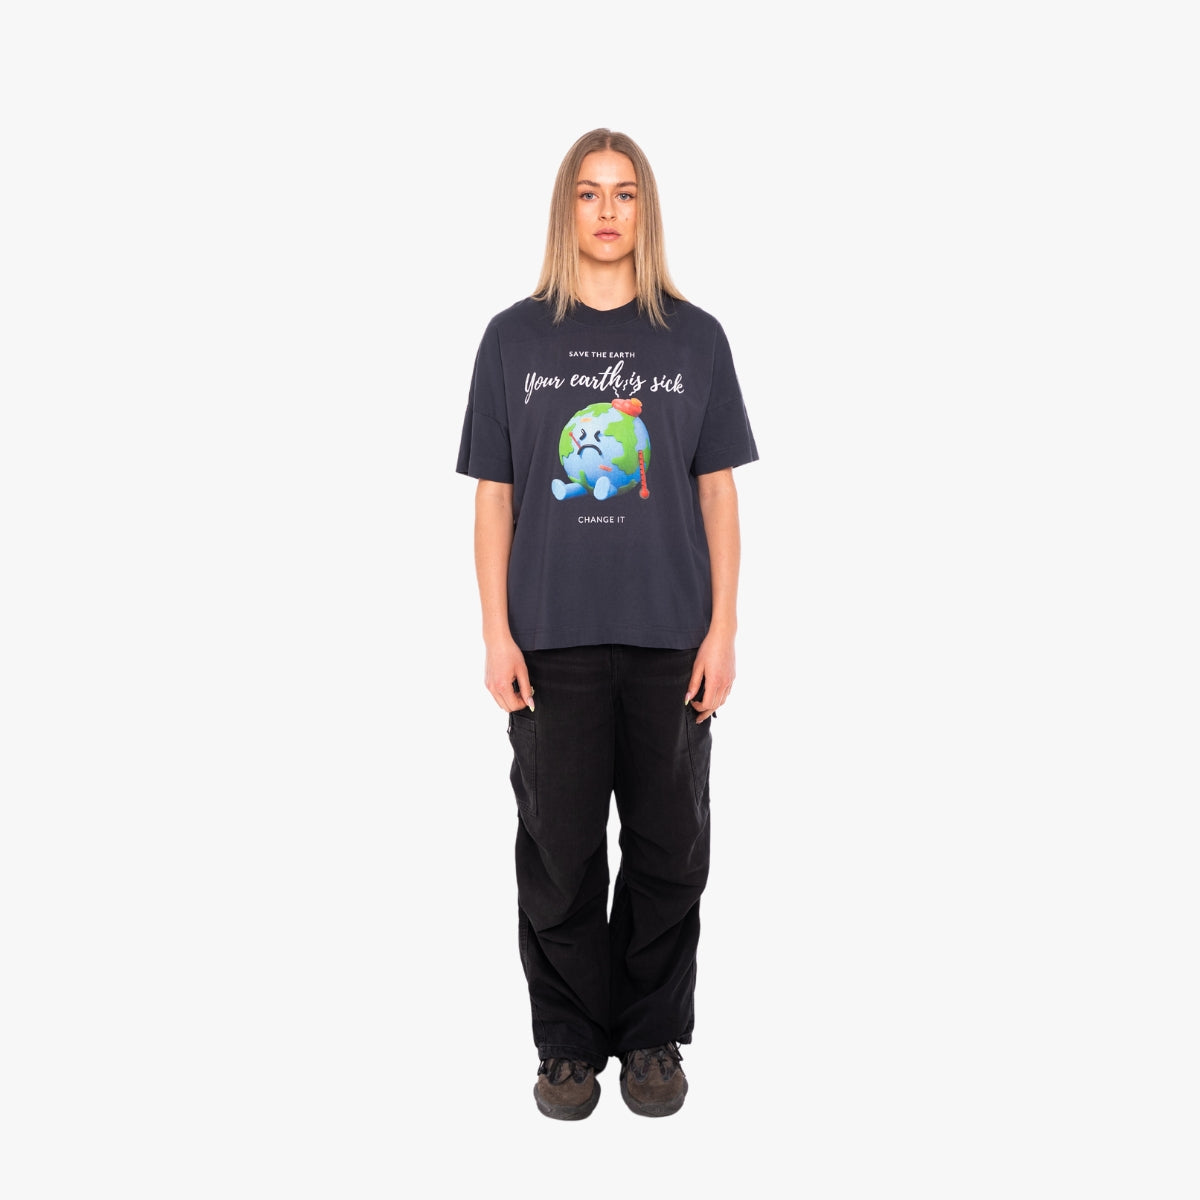 'YOUR EARTH IS SICK' Organic Oversize Shirt in der Farbe India Ink Grey als Komplettaufnahme vom Outfit getragen von einem weiblichen Model